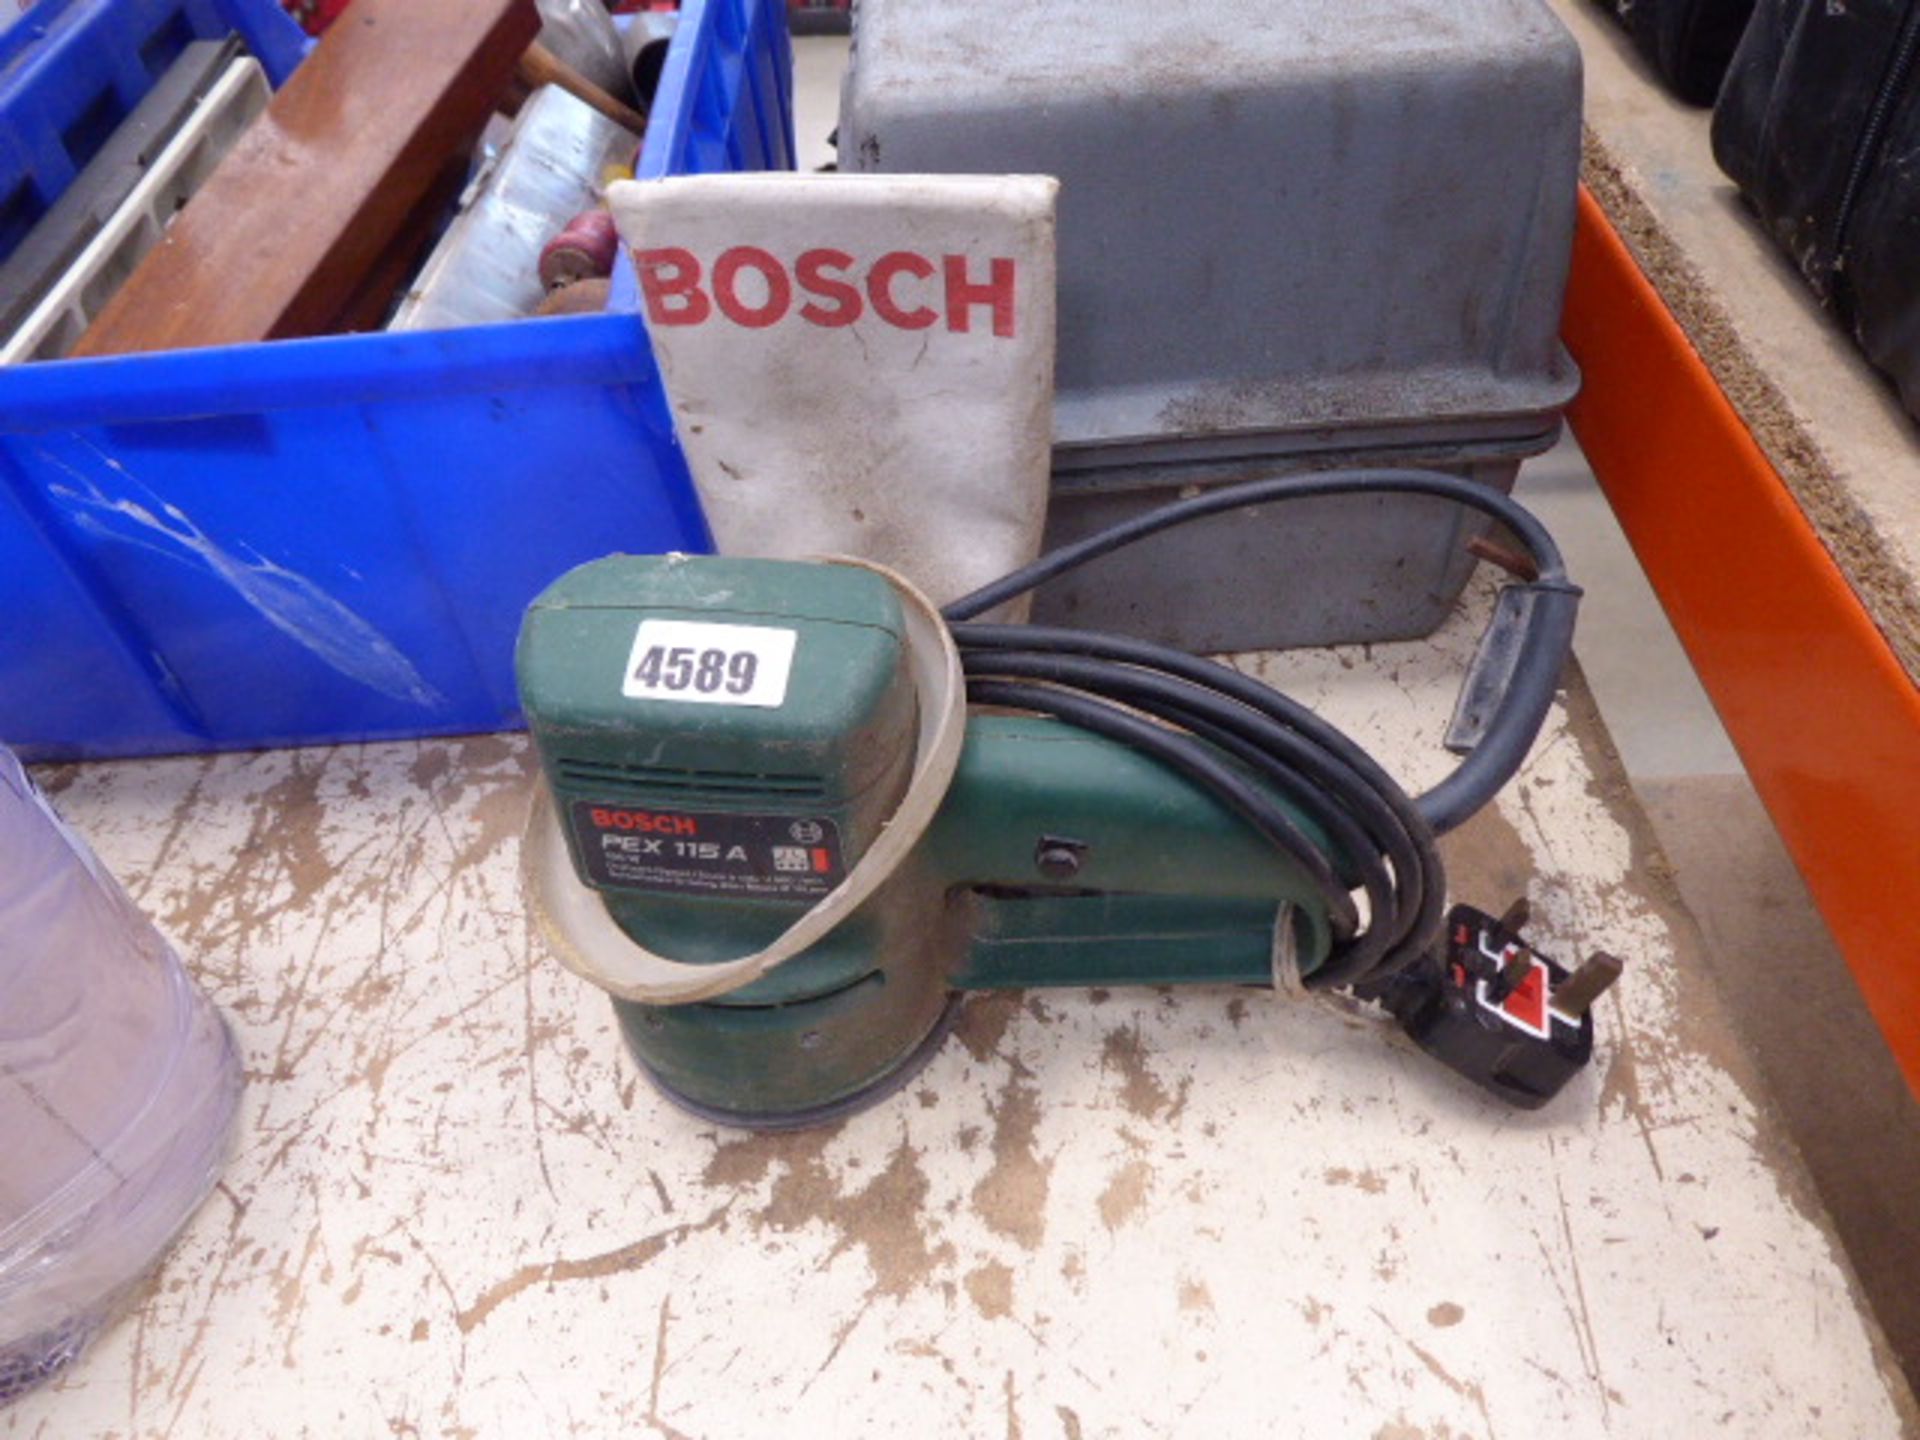 Bosch 240v sander